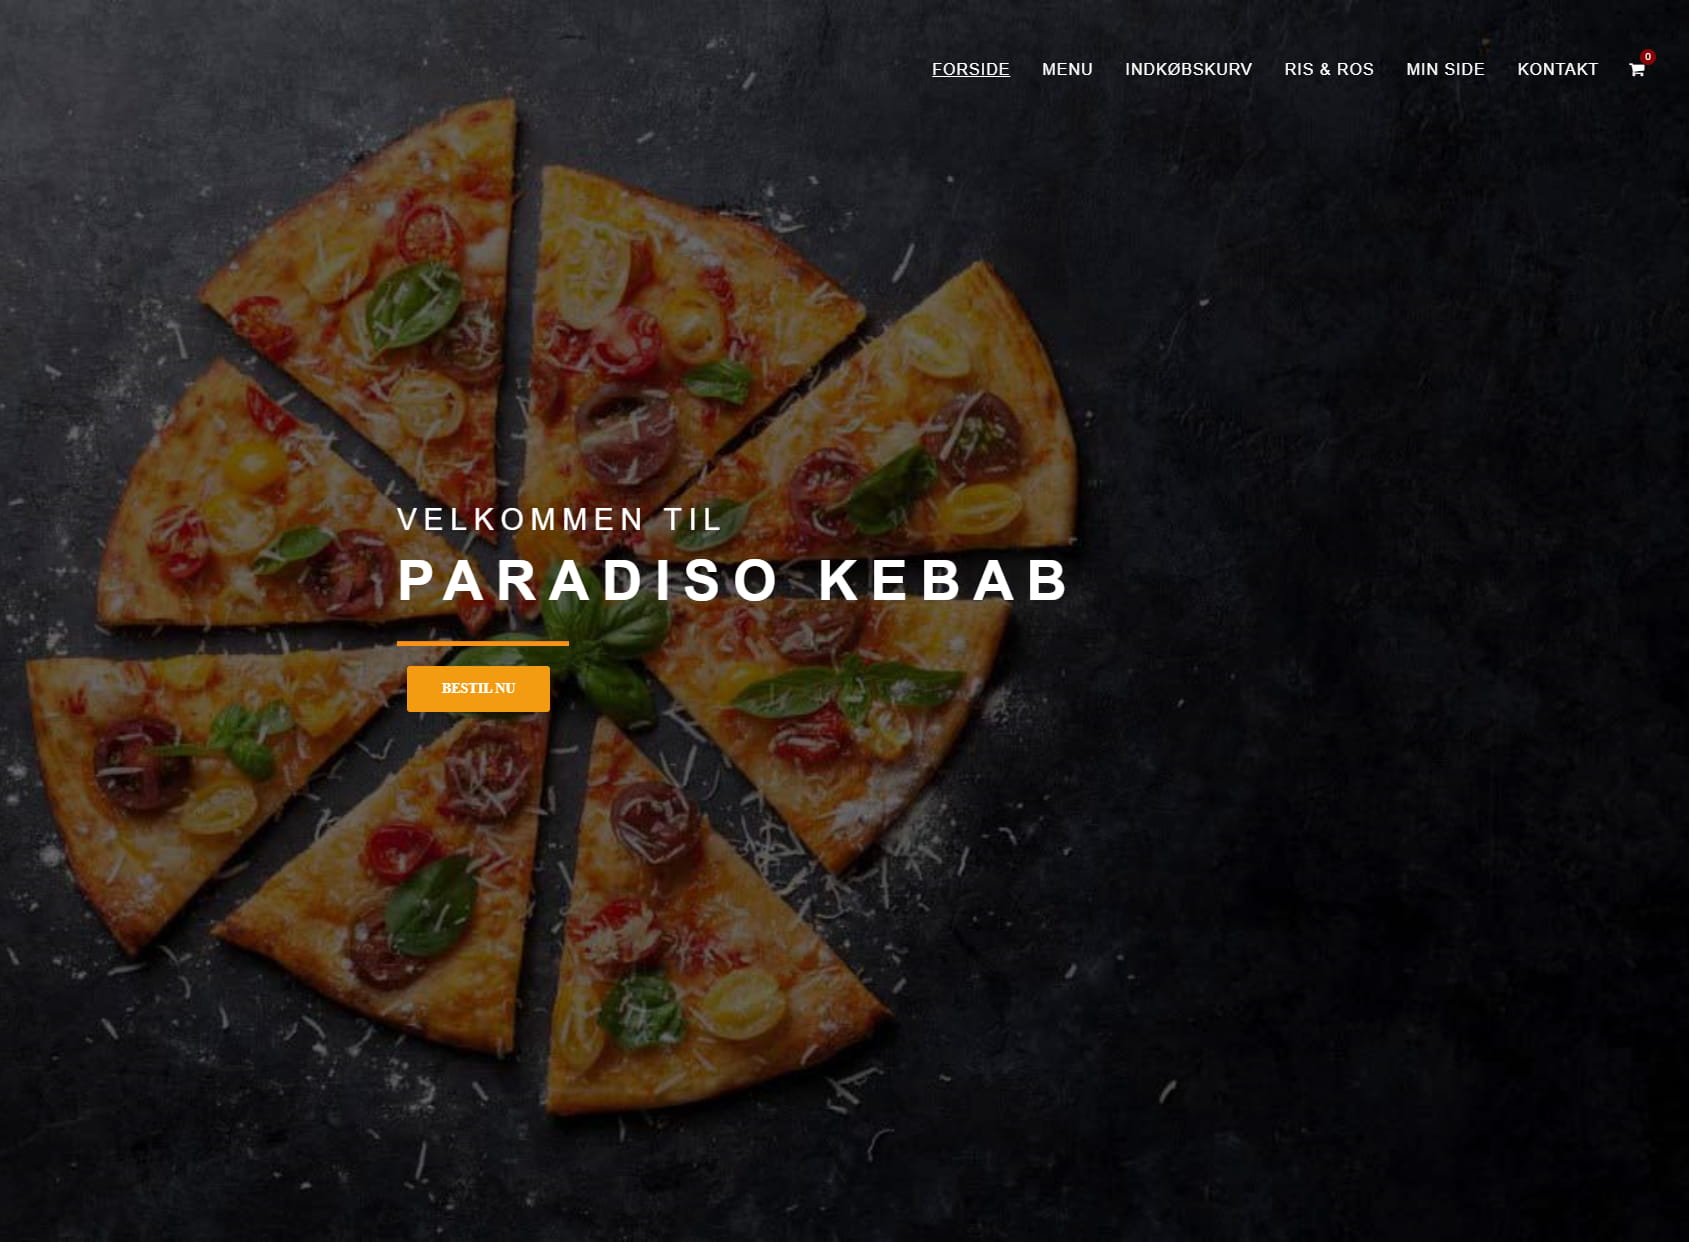 Paradiso Kebab